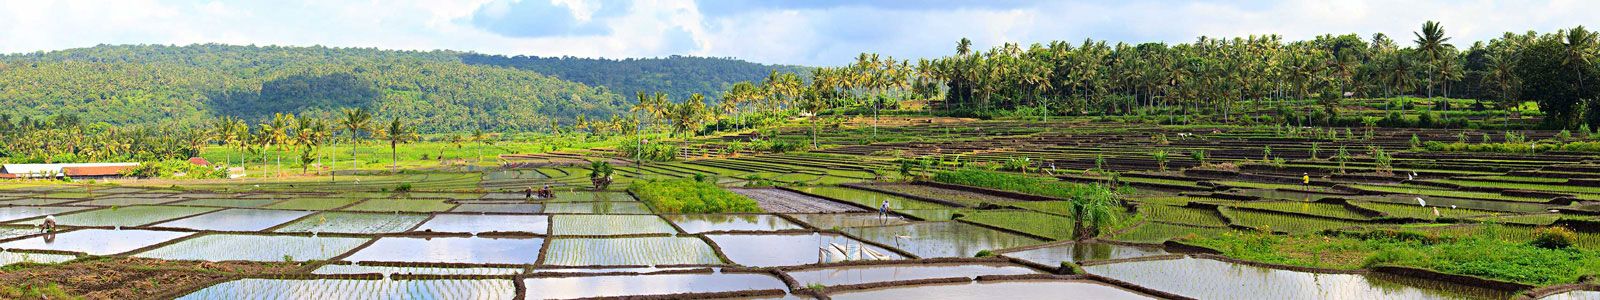 №4427 - Рисовые поля, полные воды, в солнечный день на о.Бали